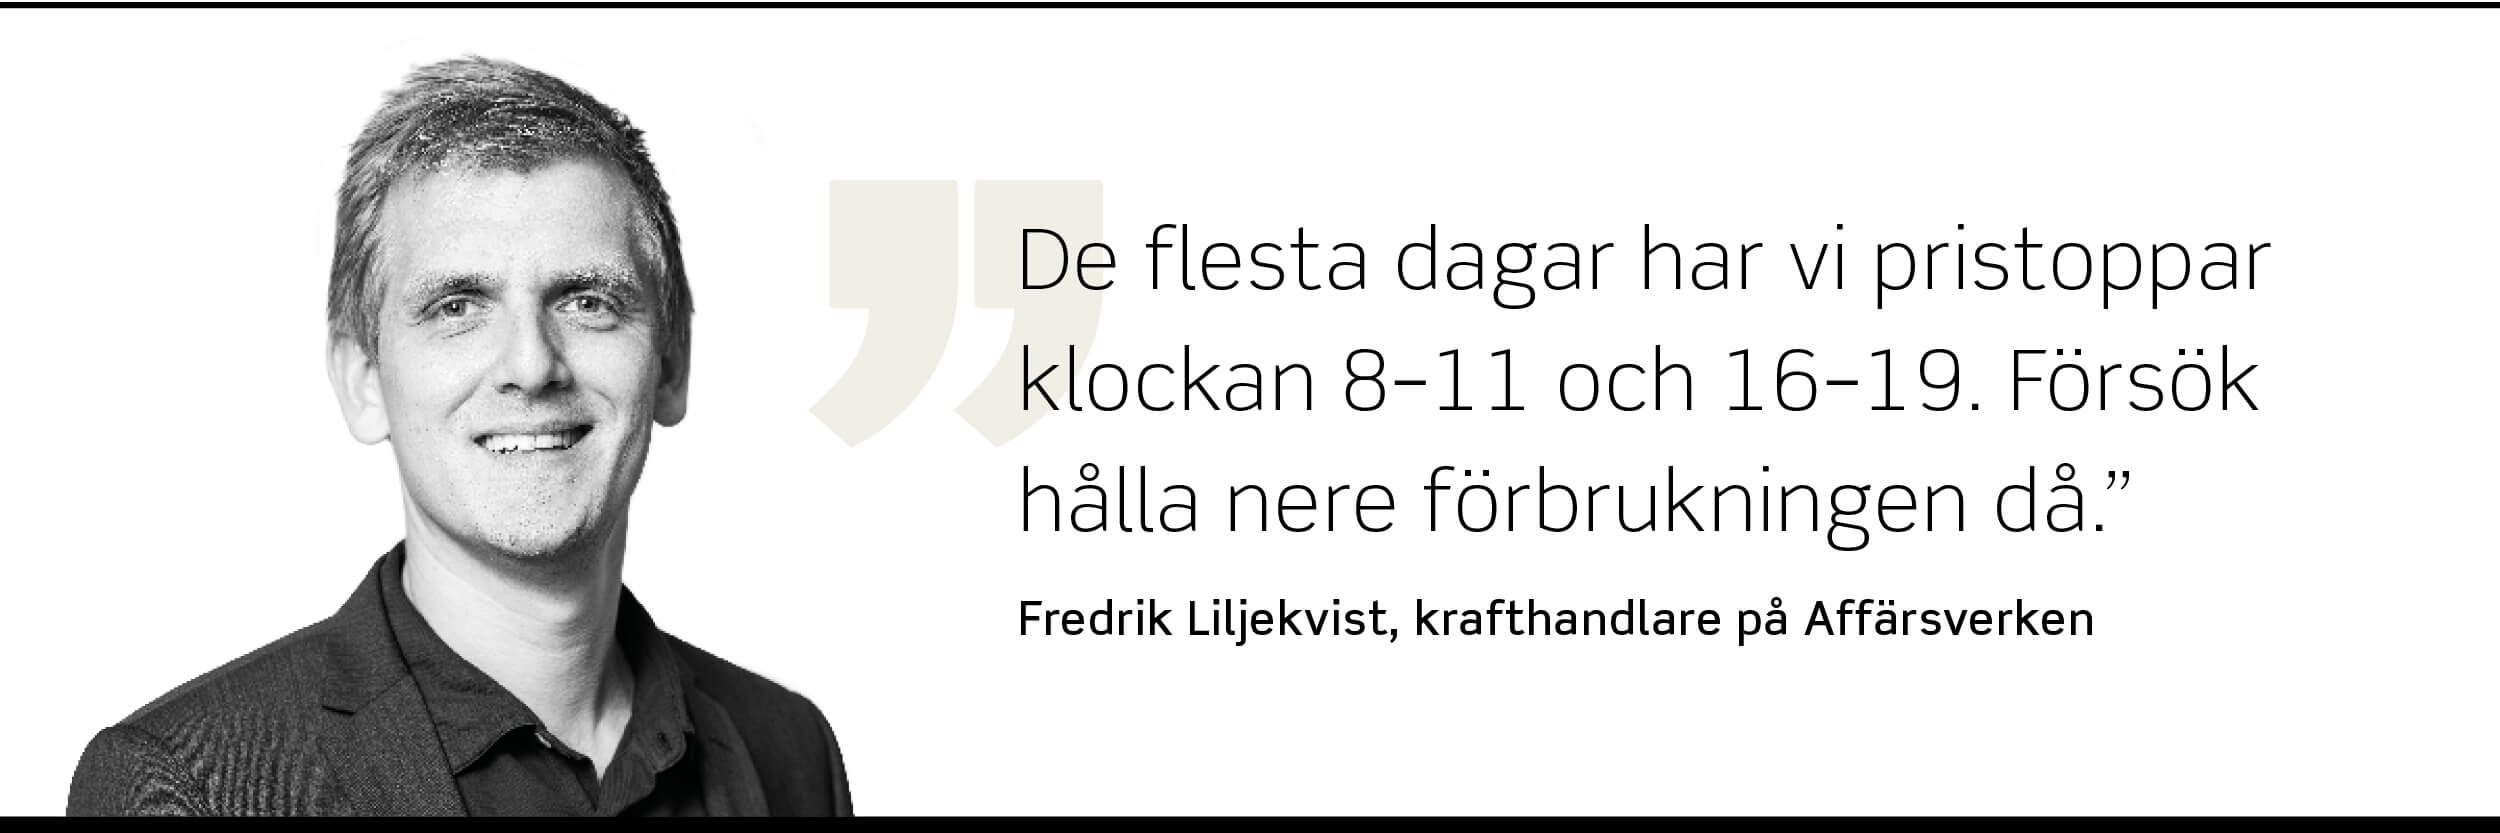 Foto på Fredrik Liljekvist, krafthandlare på Affärsverken, som säger: "De flesta dagar har vi pristoppar klockan 8–11 och 16–19. Försök hålla nere förbrukningen då."